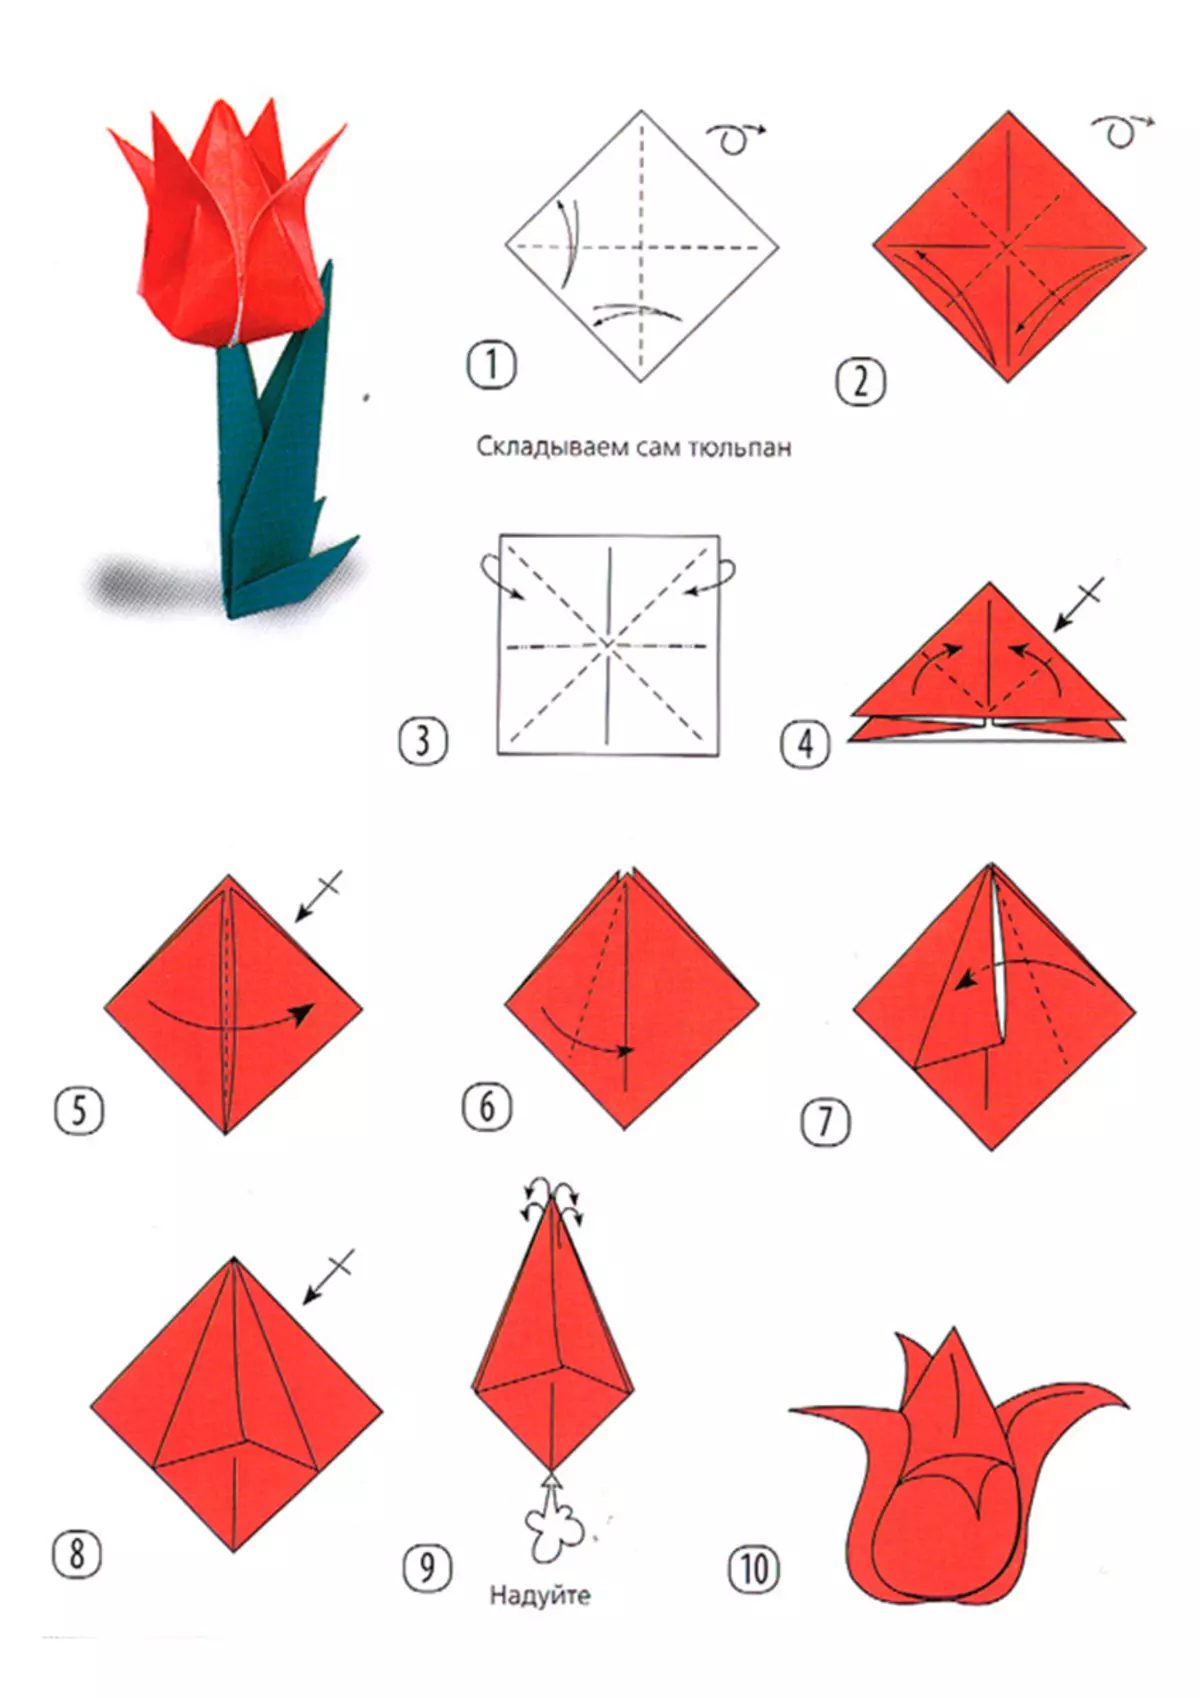 Как сделать тюльпан из бумаги поэтапно. Цветы из бумаги оригами простые схемы пошагово. Оригами тюльпан пошагово для начинающих. Оригами тюльпан схема. Оригами цветок тюльпан схема.